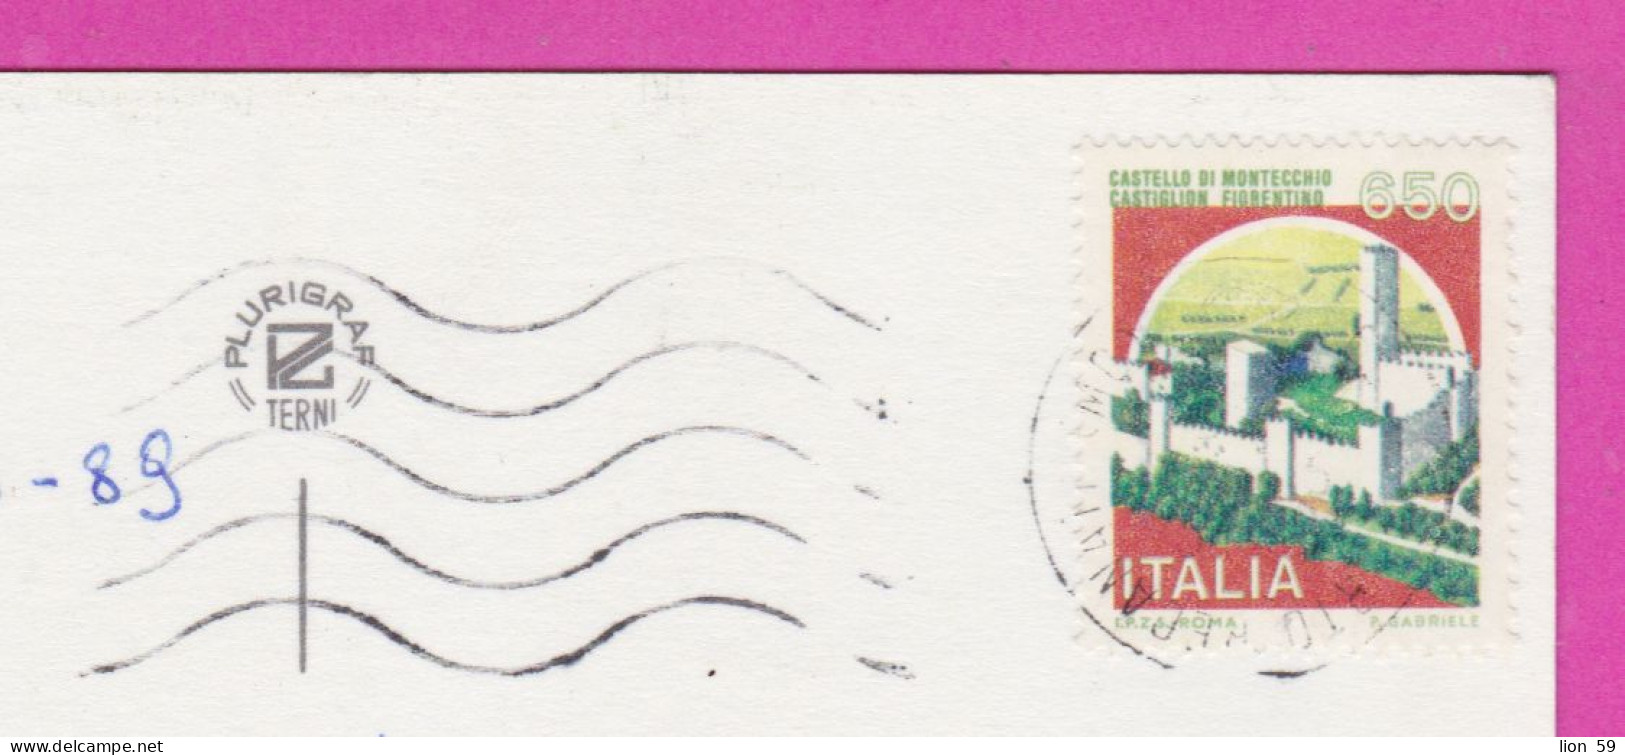 293891 / Italy - Rivera Del CONERO PC 1989 Porto Recanati USED 650 L Castello Di Montecchio, Castiglion Fiorentino - 1981-90: Marcophilia